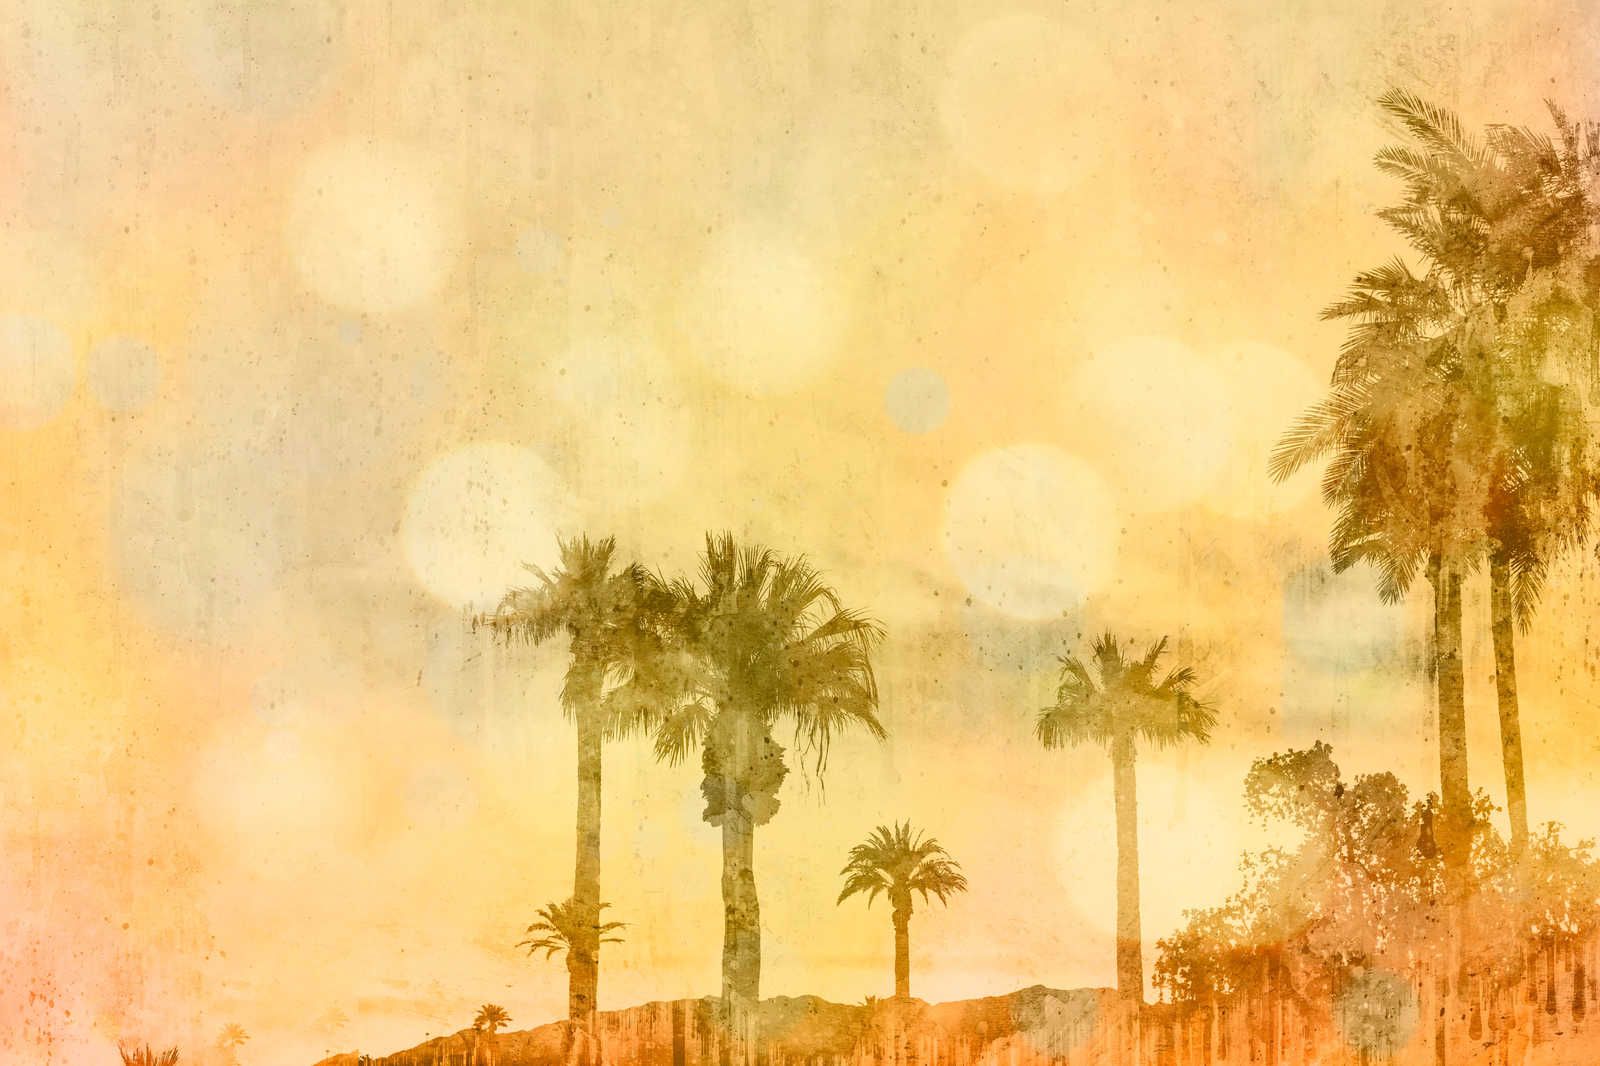             Toile Plage de palmiers au coucher du soleil avec effet de lumière - 0,90 m x 0,60 m
        